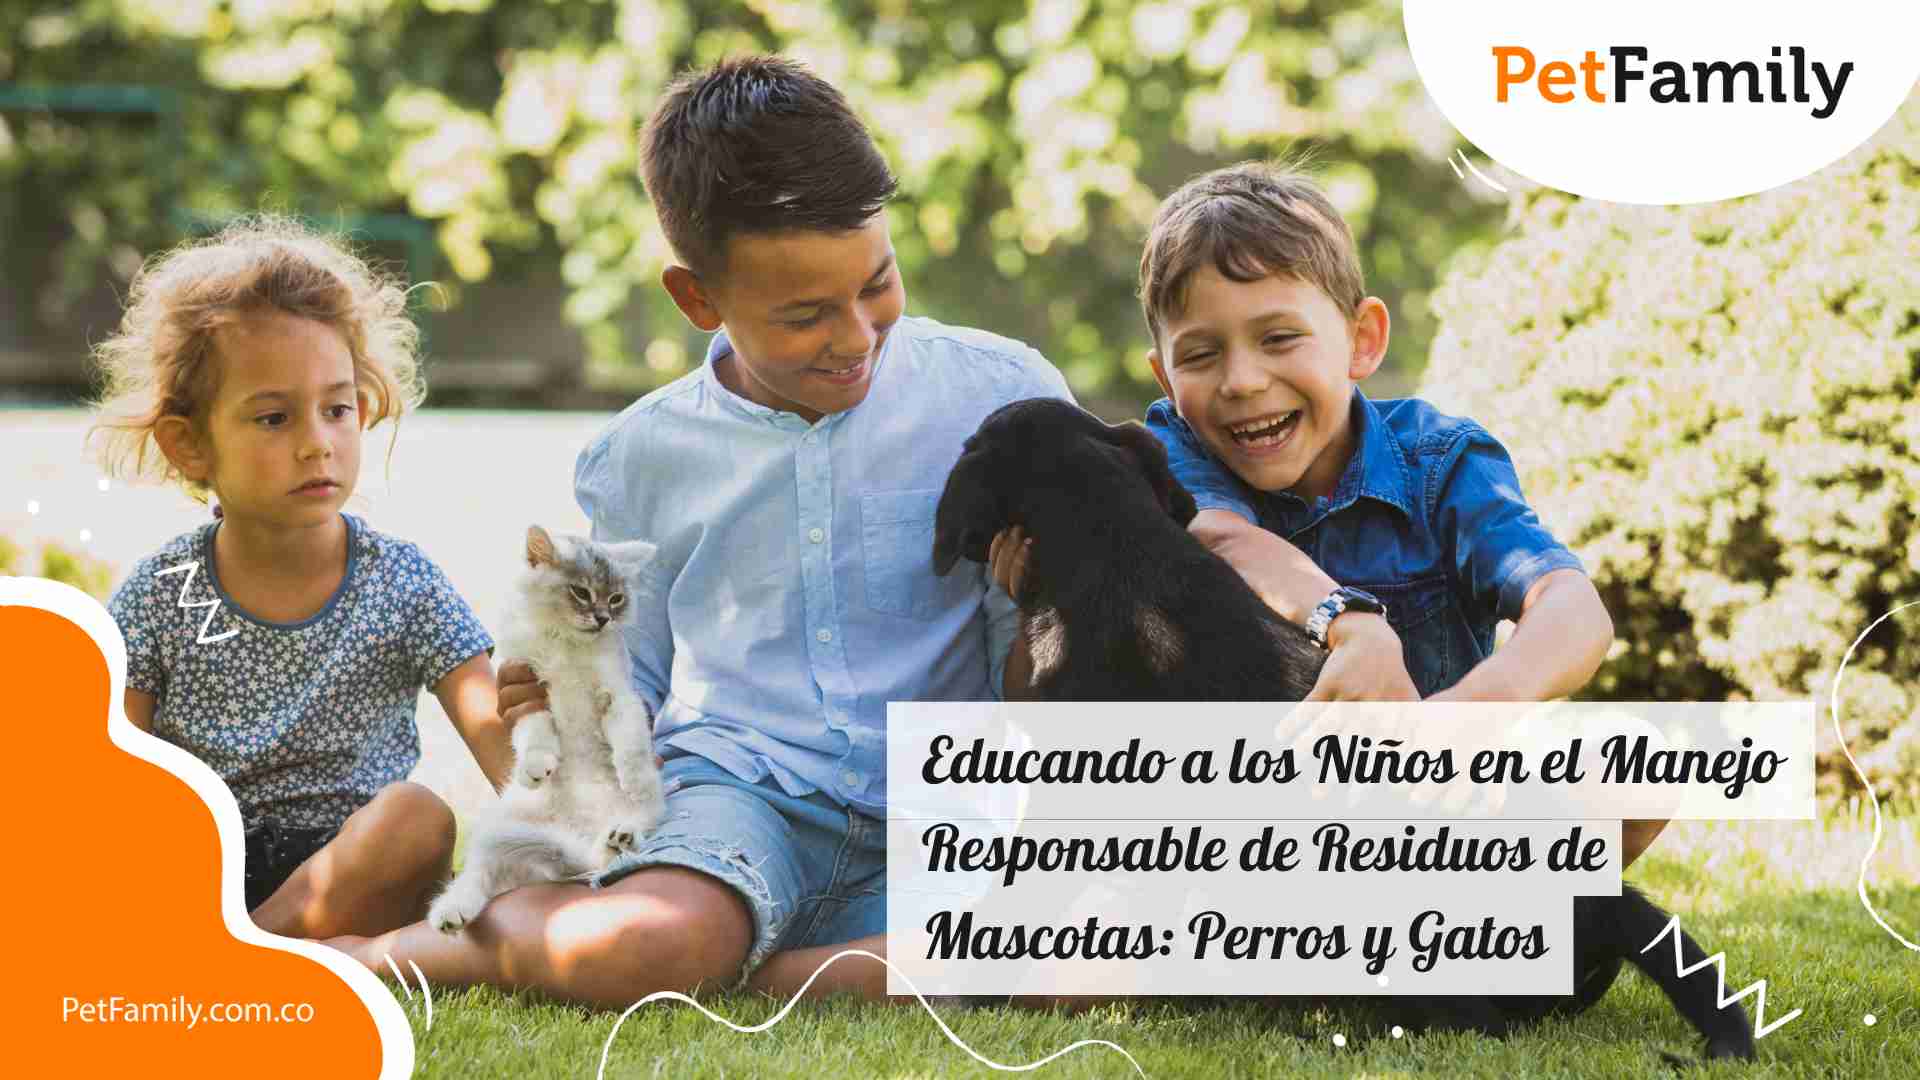 Educando a los Niños en el Manejo Responsable de Residuos de Mascotas: Perros y Gatos